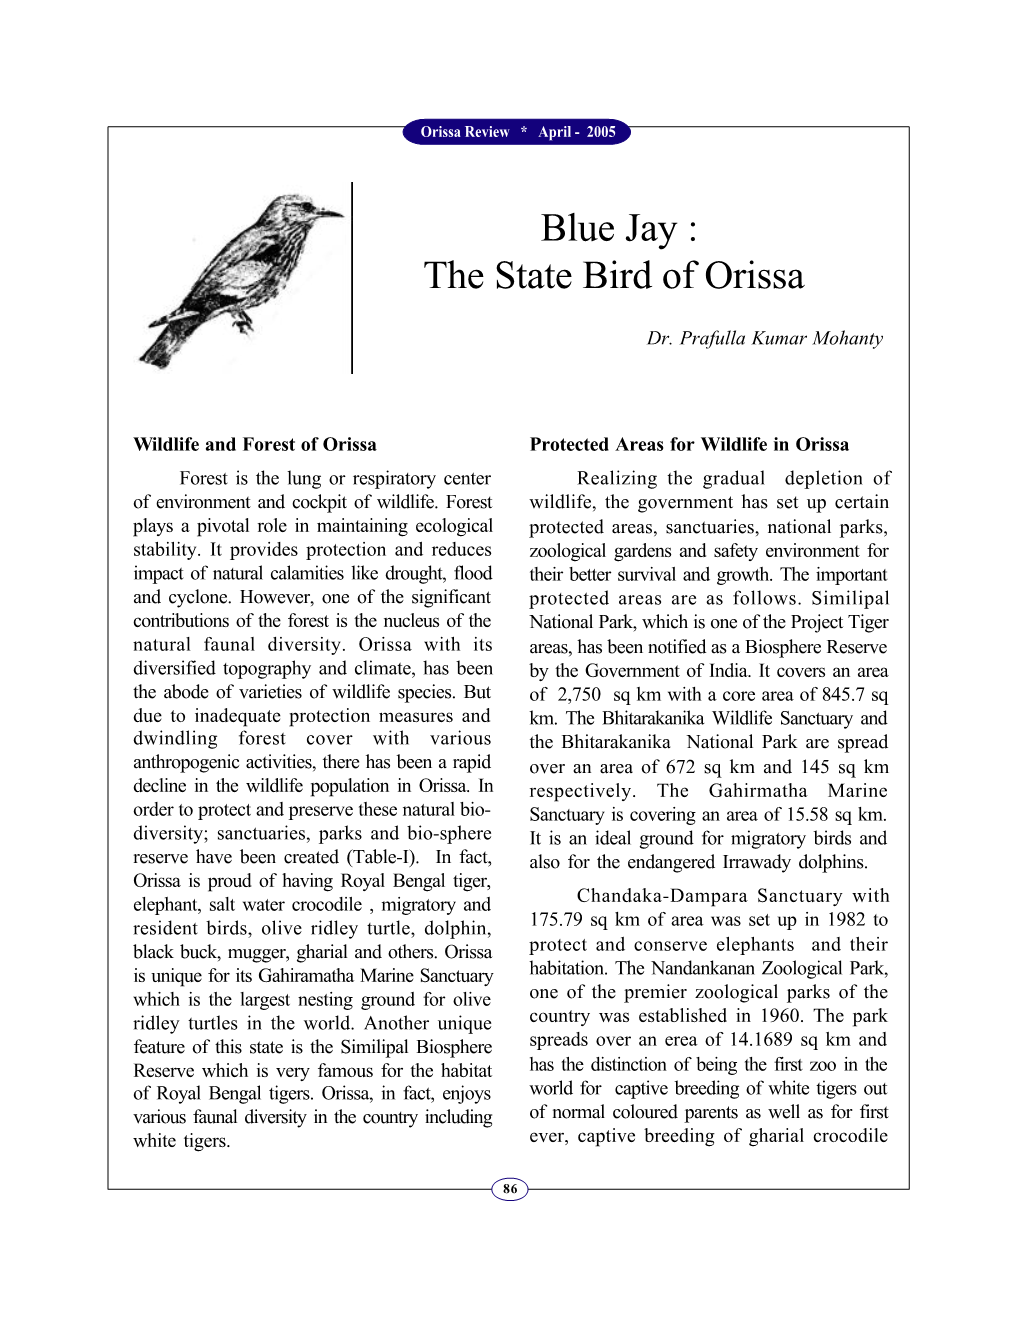 Blue Jay : the State Bird of Orissa